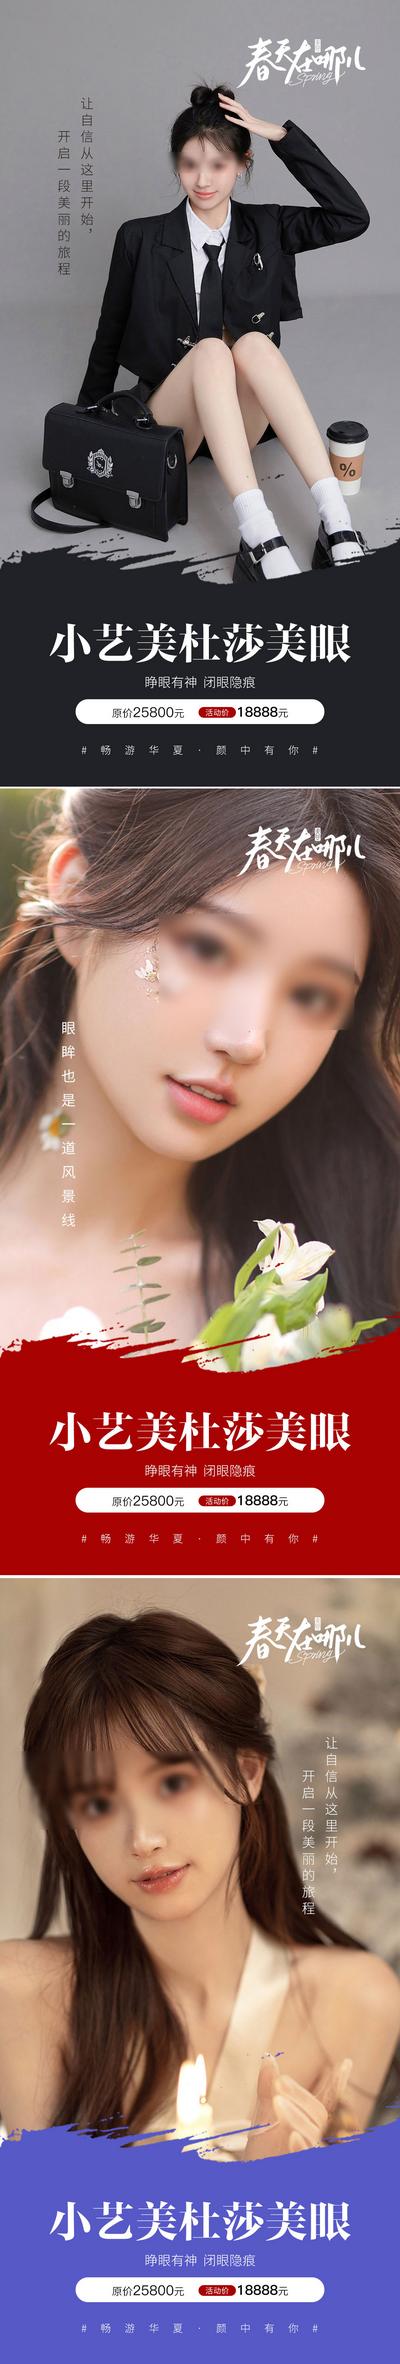 南门网 广告 海报 依美 人物 眼睛 美杜莎 青春 系列 女神